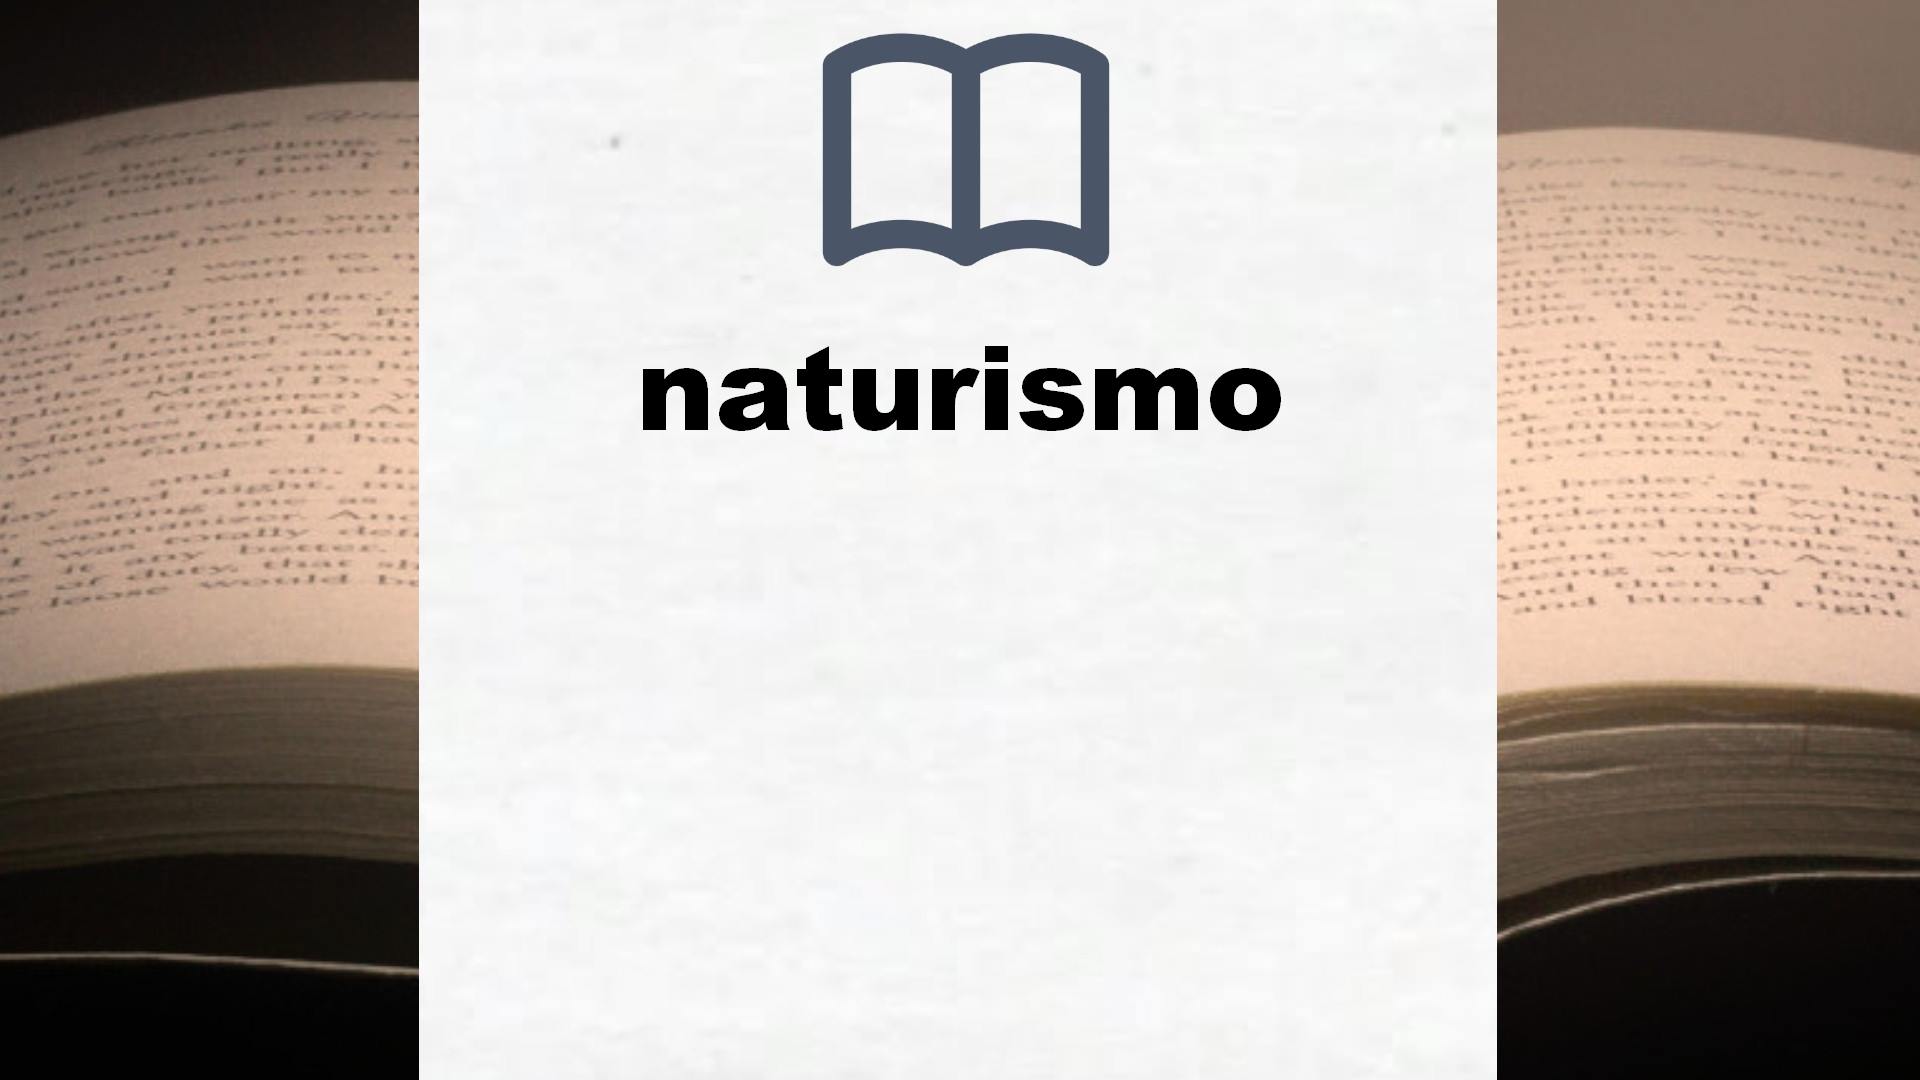 Libros sobre naturismo